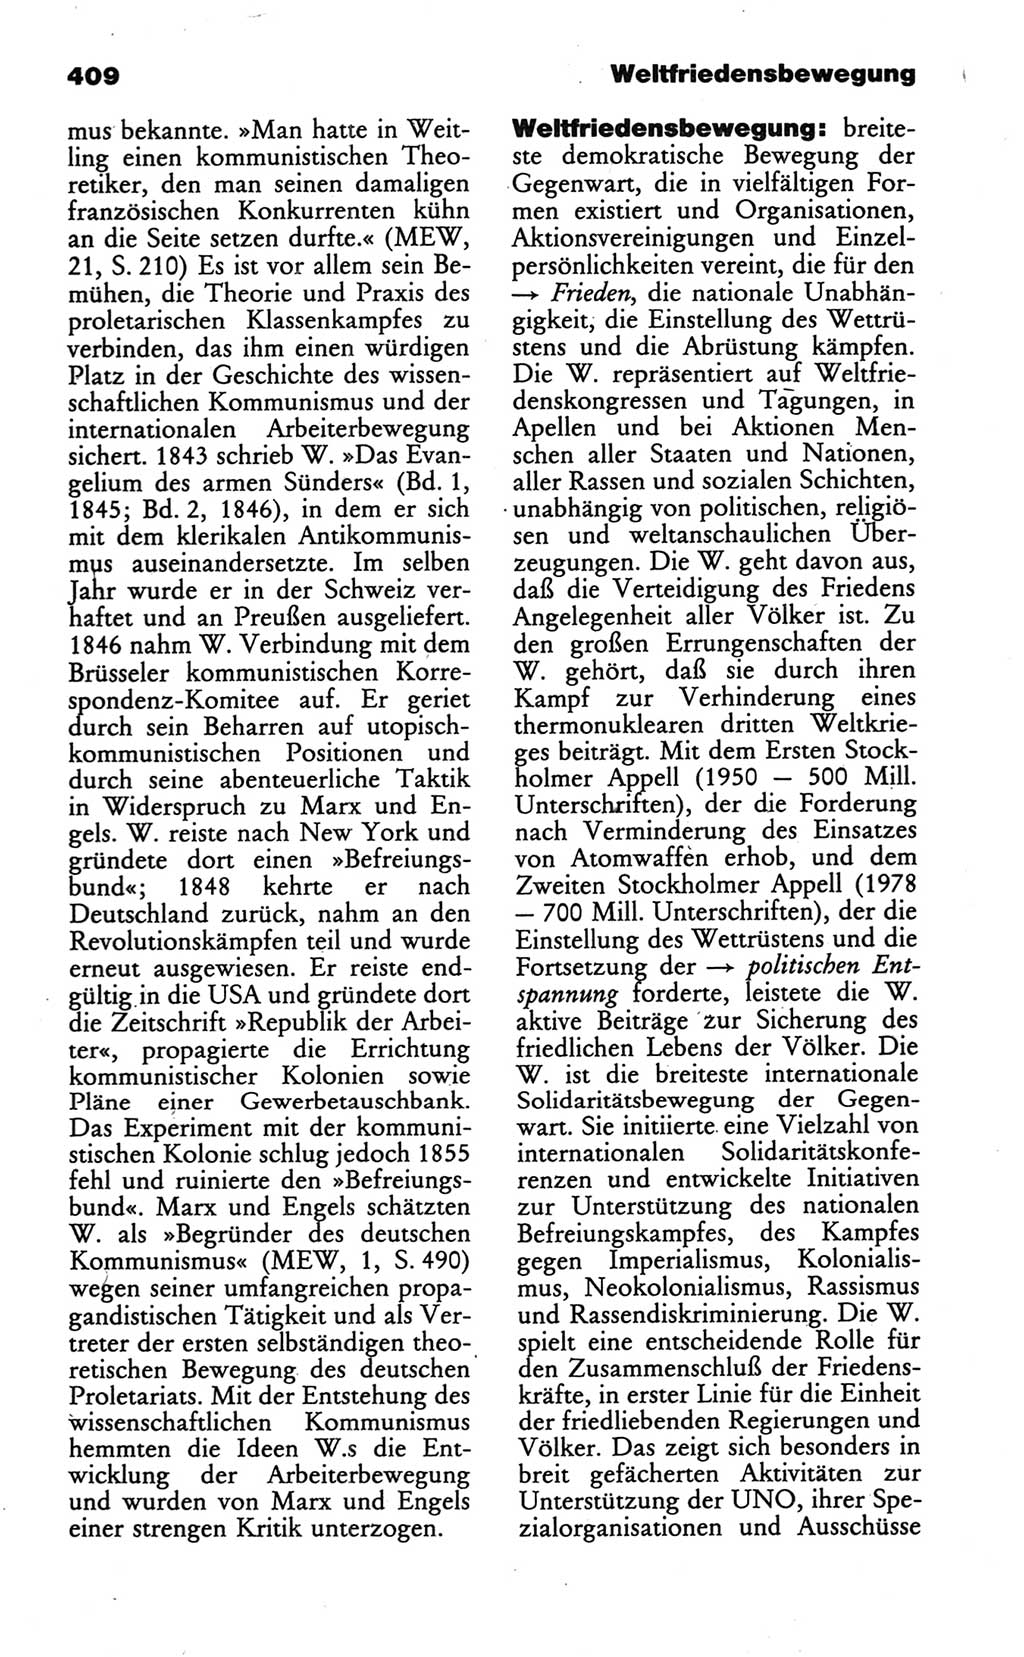 Wörterbuch des wissenschaftlichen Kommunismus [Deutsche Demokratische Republik (DDR)] 1986, Seite 409 (Wb. wiss. Komm. DDR 1986, S. 409)